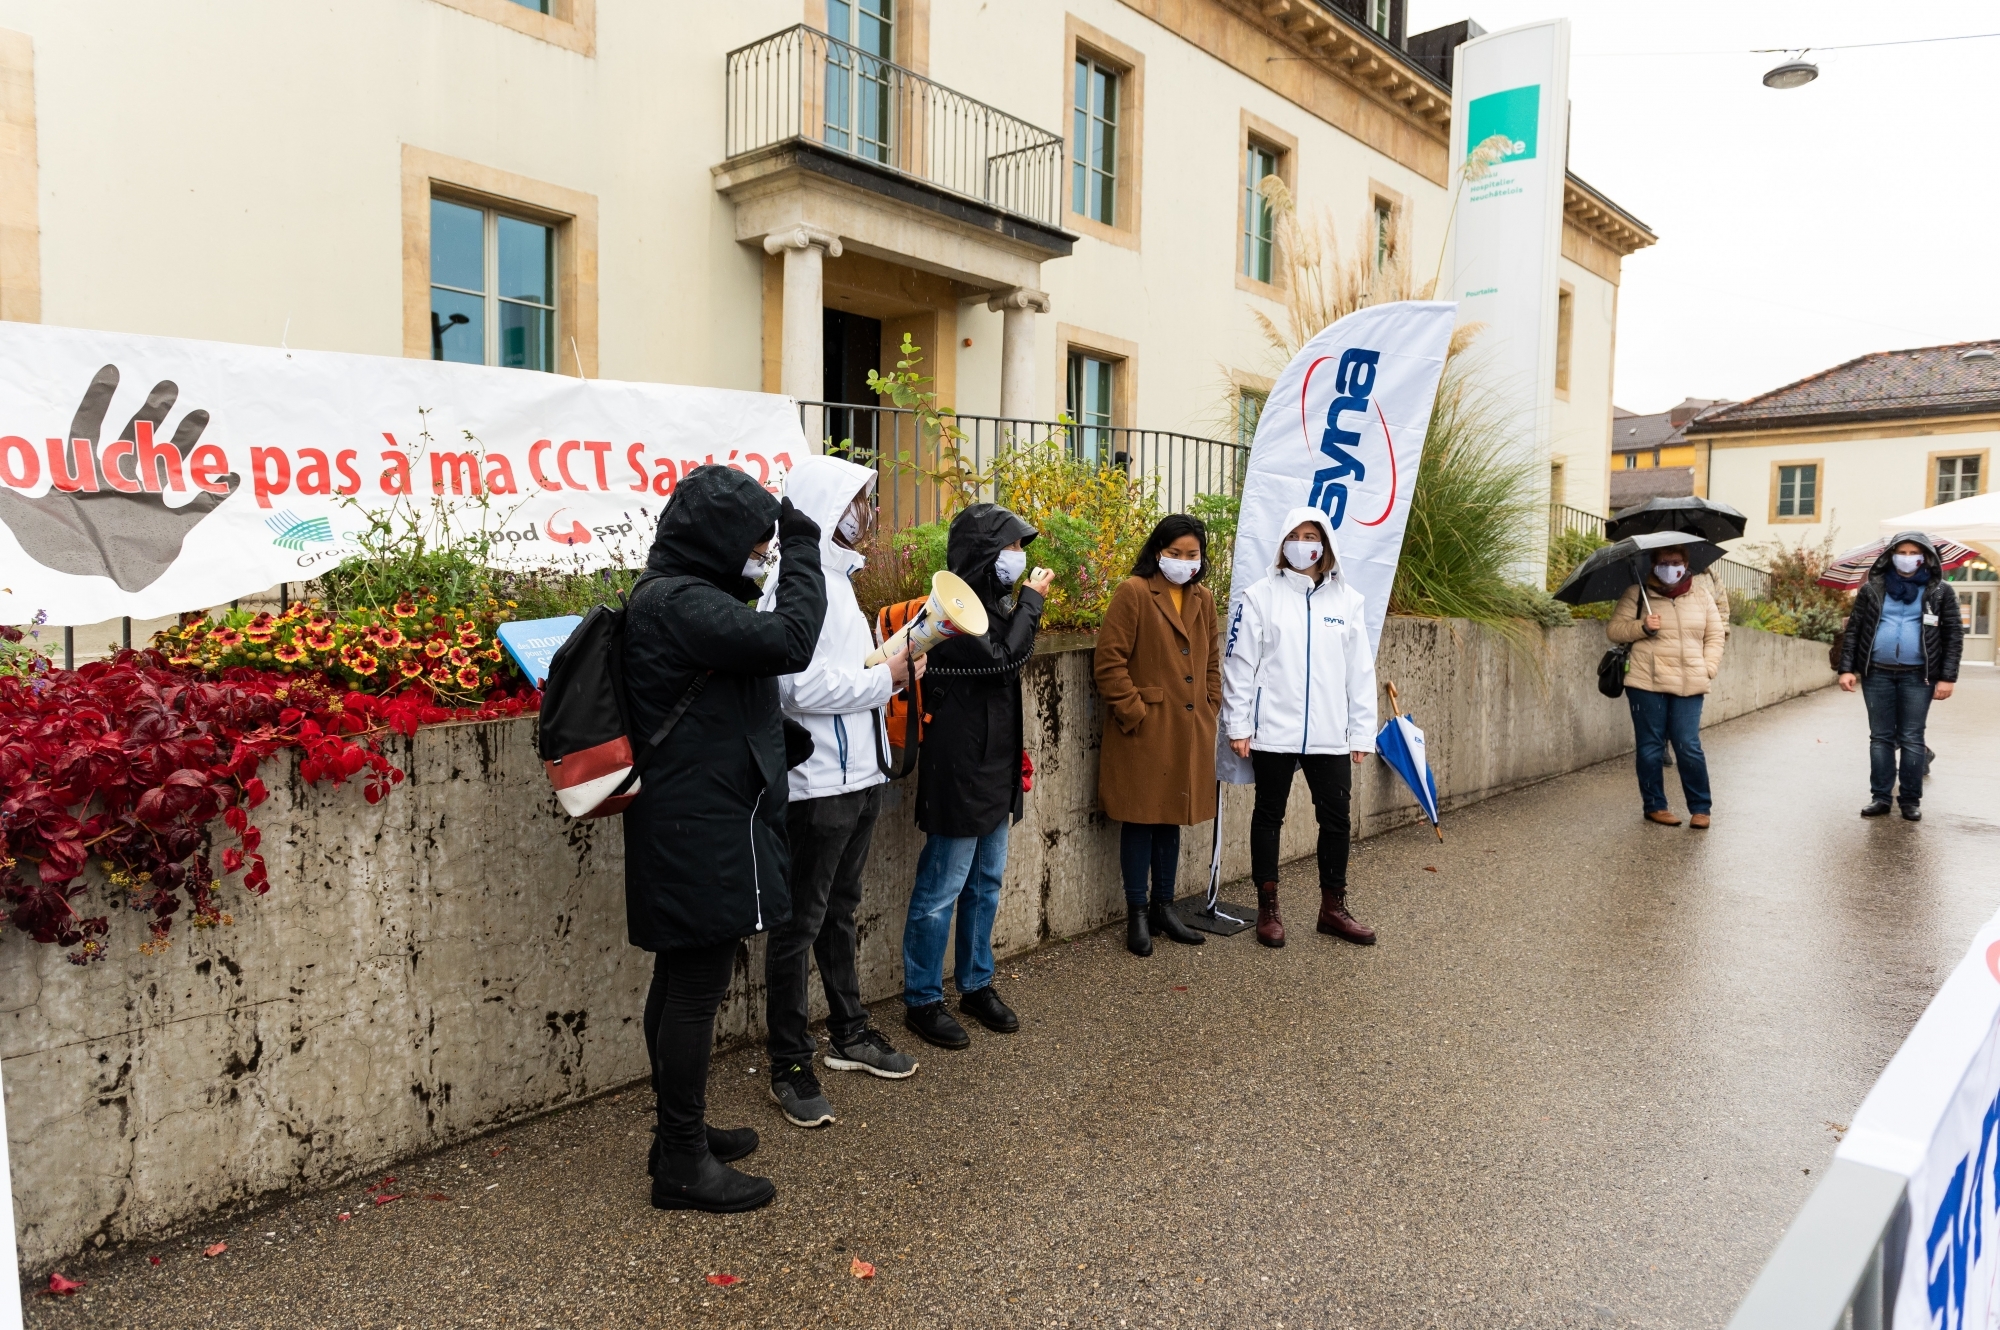 En octobre, les syndicats avaient manifesté devant l'hôpital de Pourtalès dans le cadre des négociations aujourd'hui suspendues.